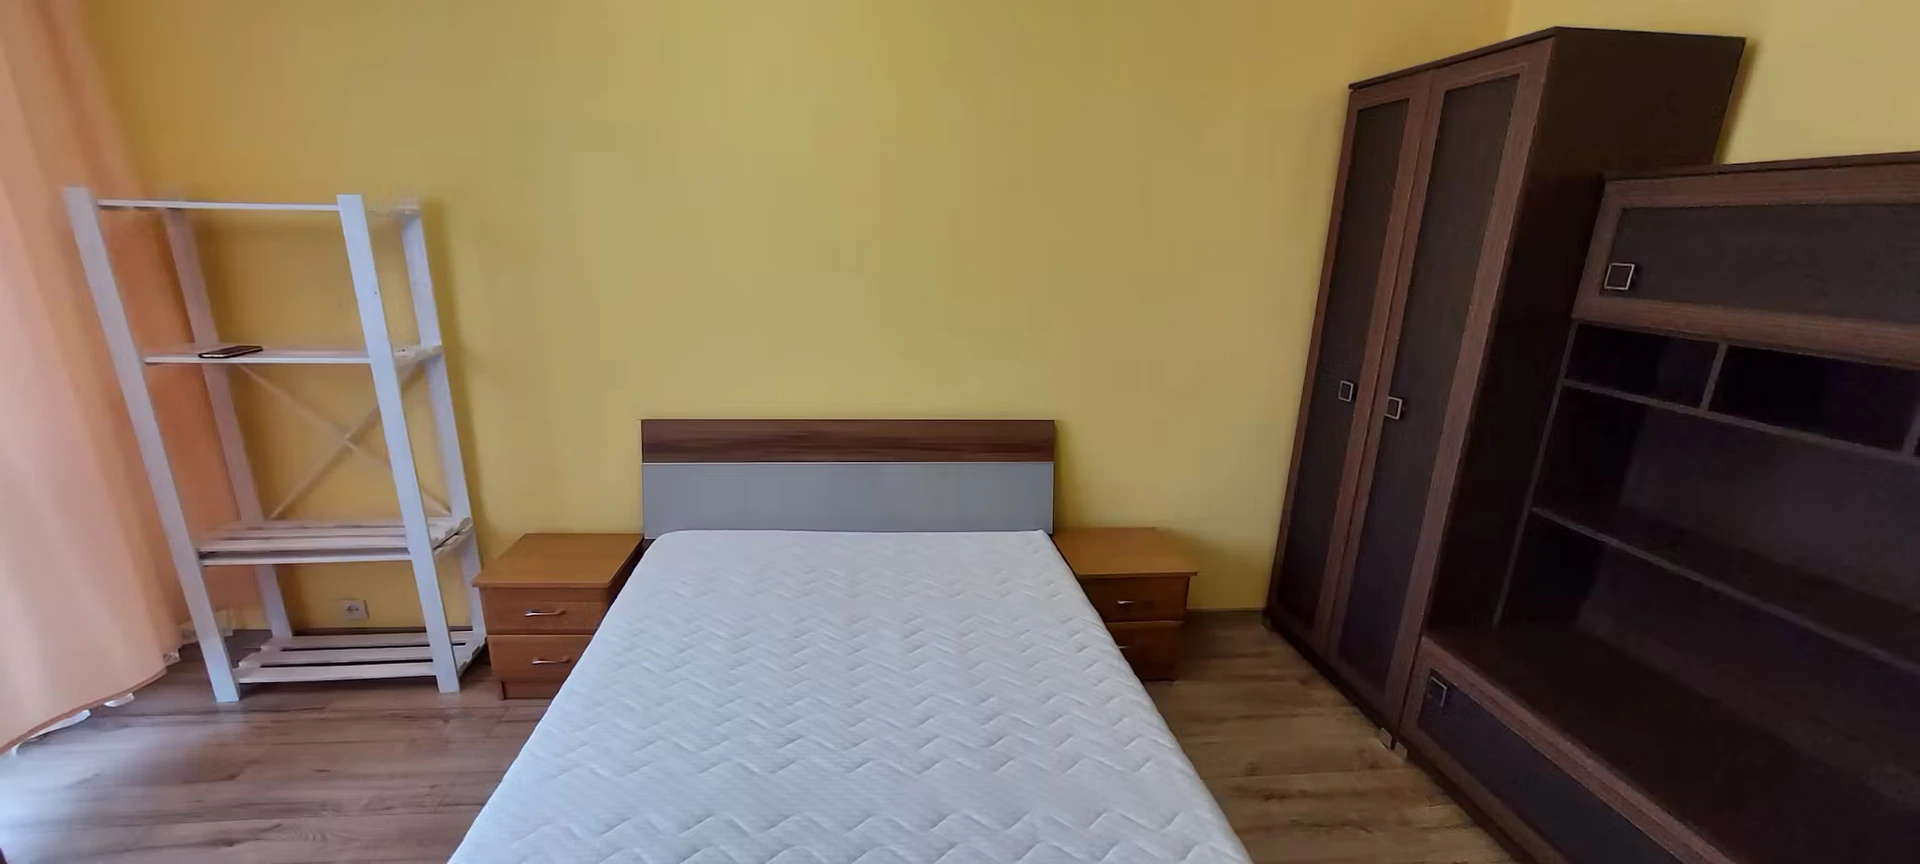 Habitación en alquiler con cama doble Rzeszów